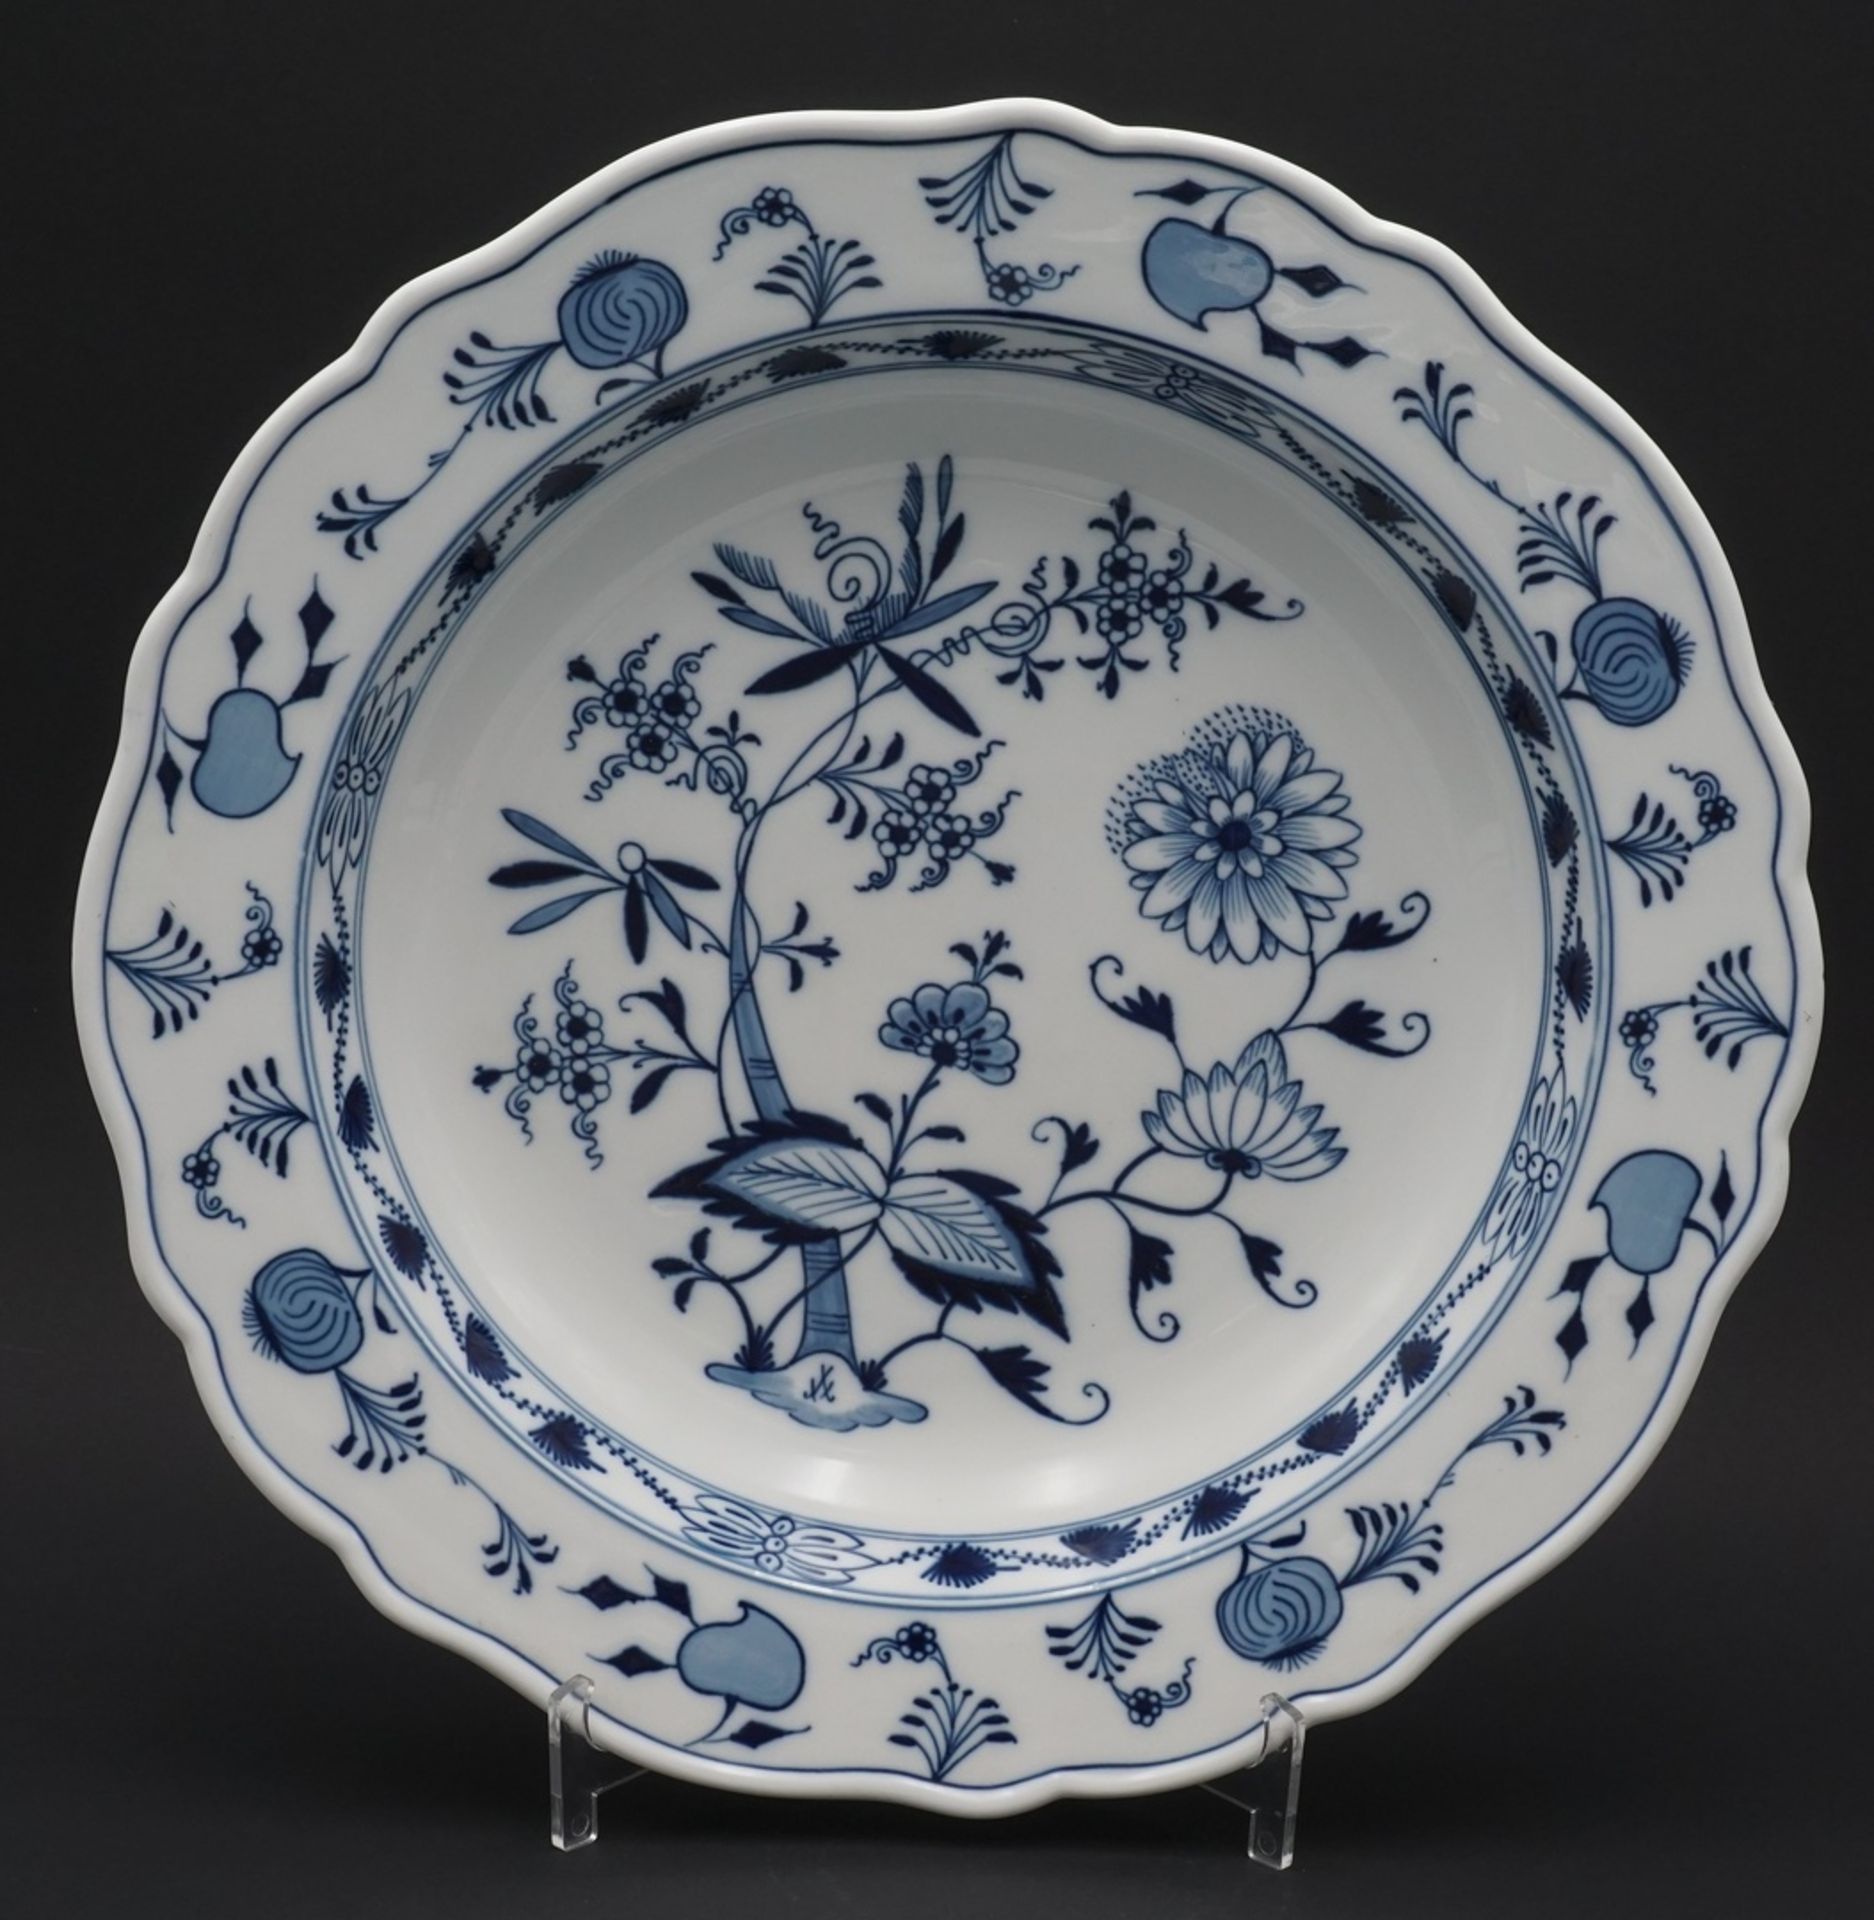 Große Meissen Schale mit Zwiebelmuster, 1815 - 19231. Wahl, Zwiebelmuster, kobaltblau, weißer